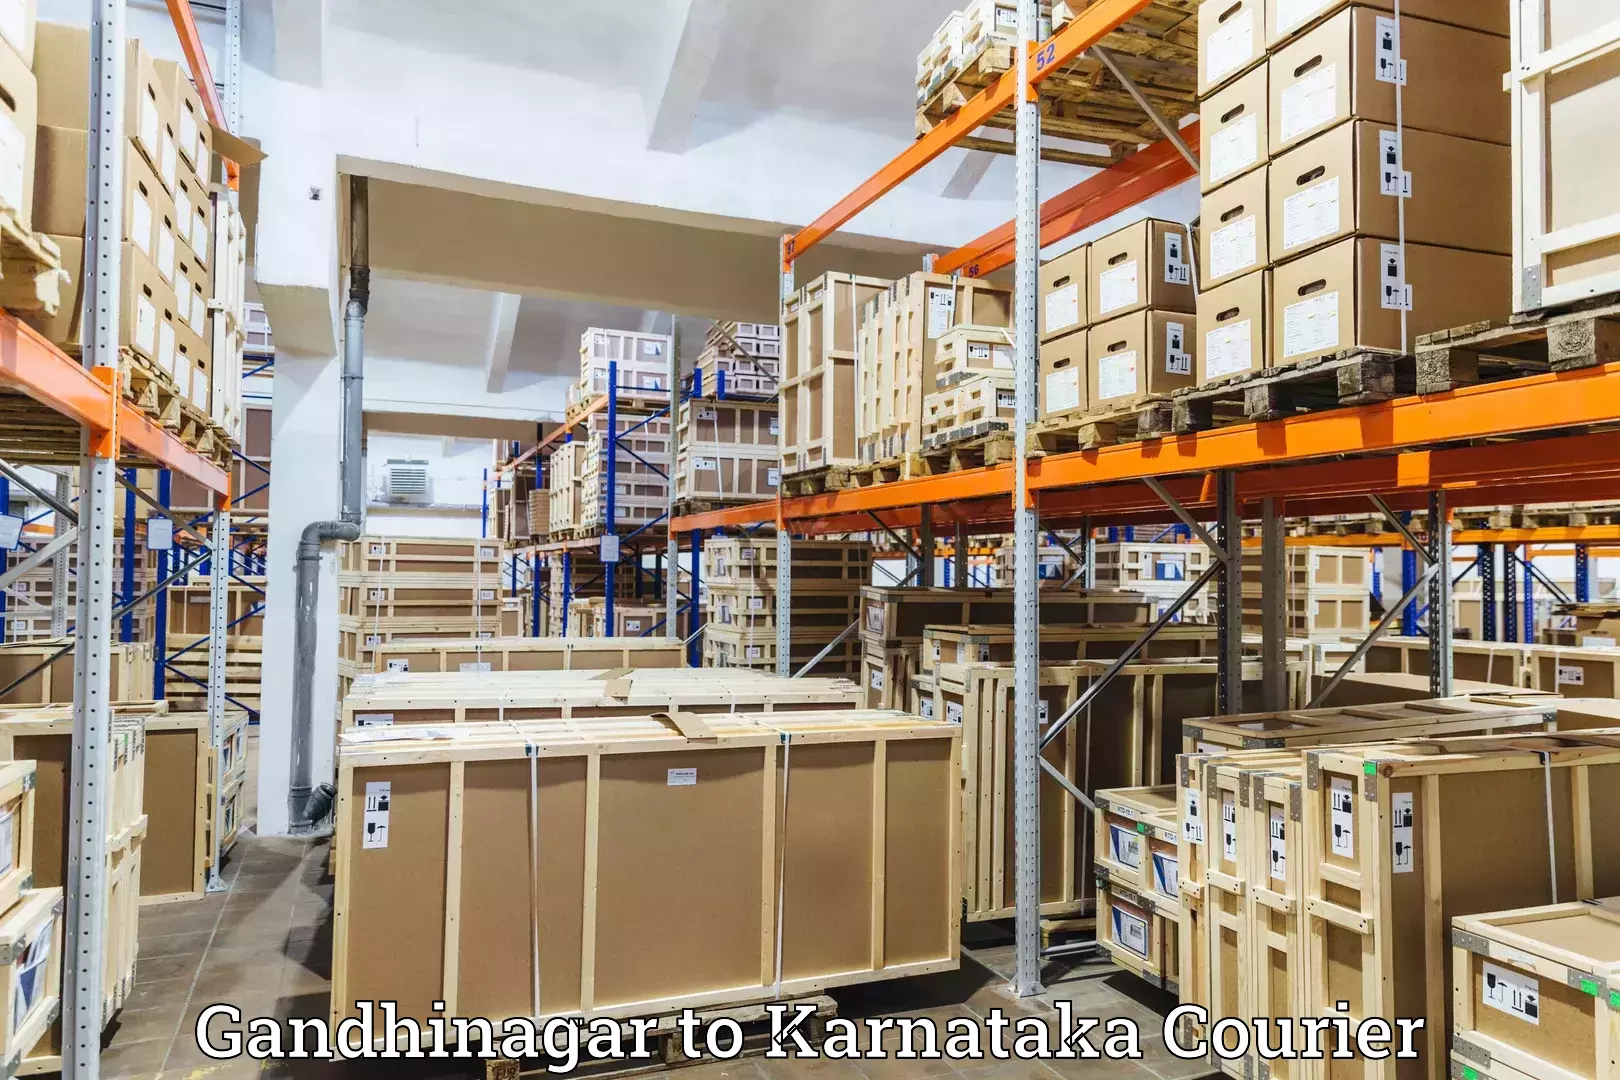 Premium courier services Gandhinagar to Ranebennur